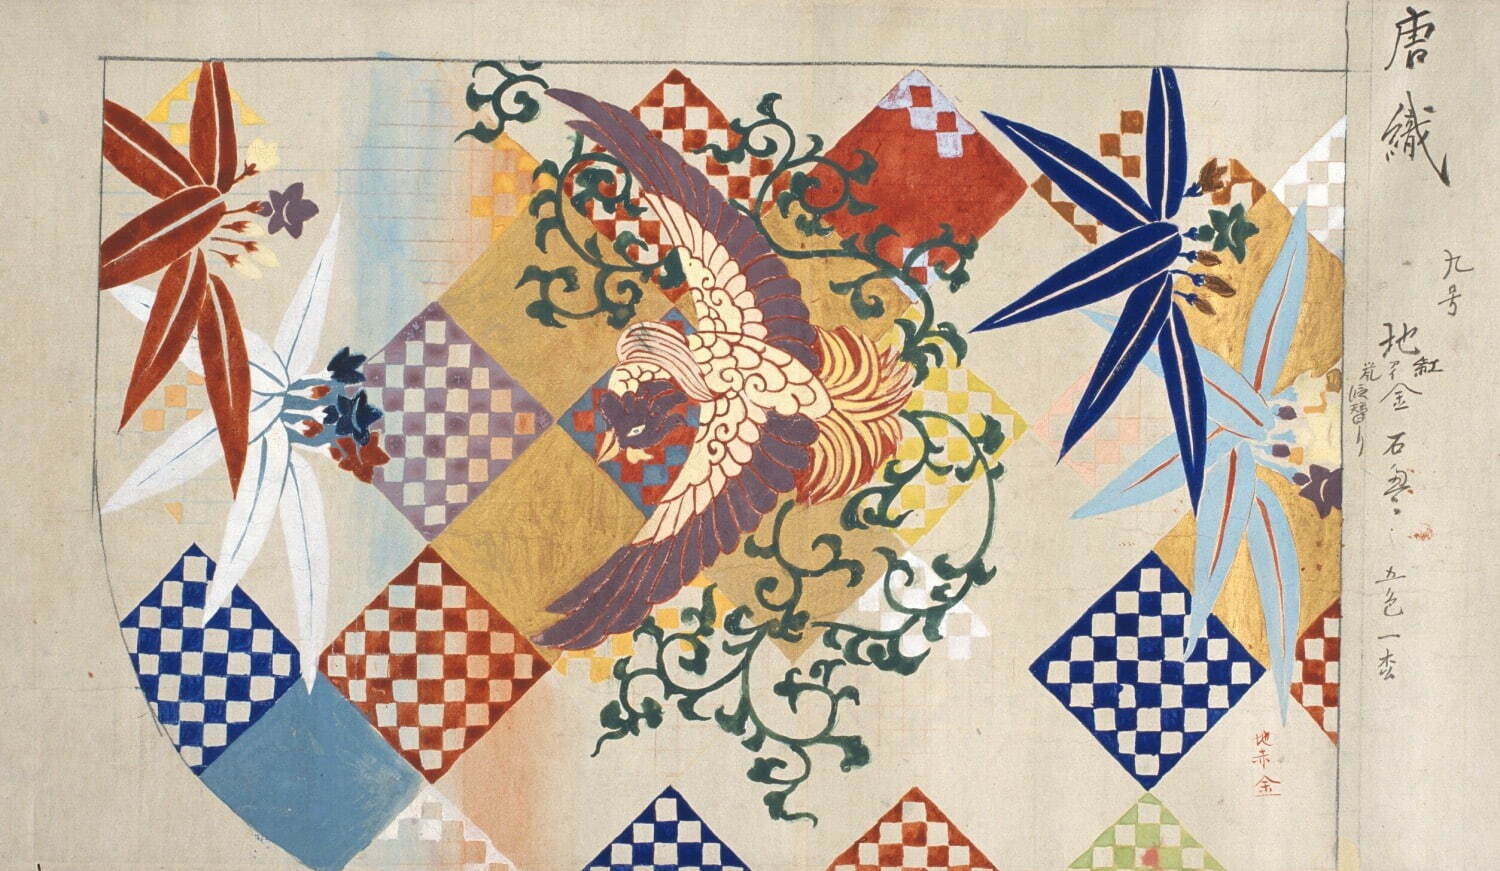 狩野芳崖《加州家蔵能装束模様》1887年(明治20年) 東京藝術大学蔵